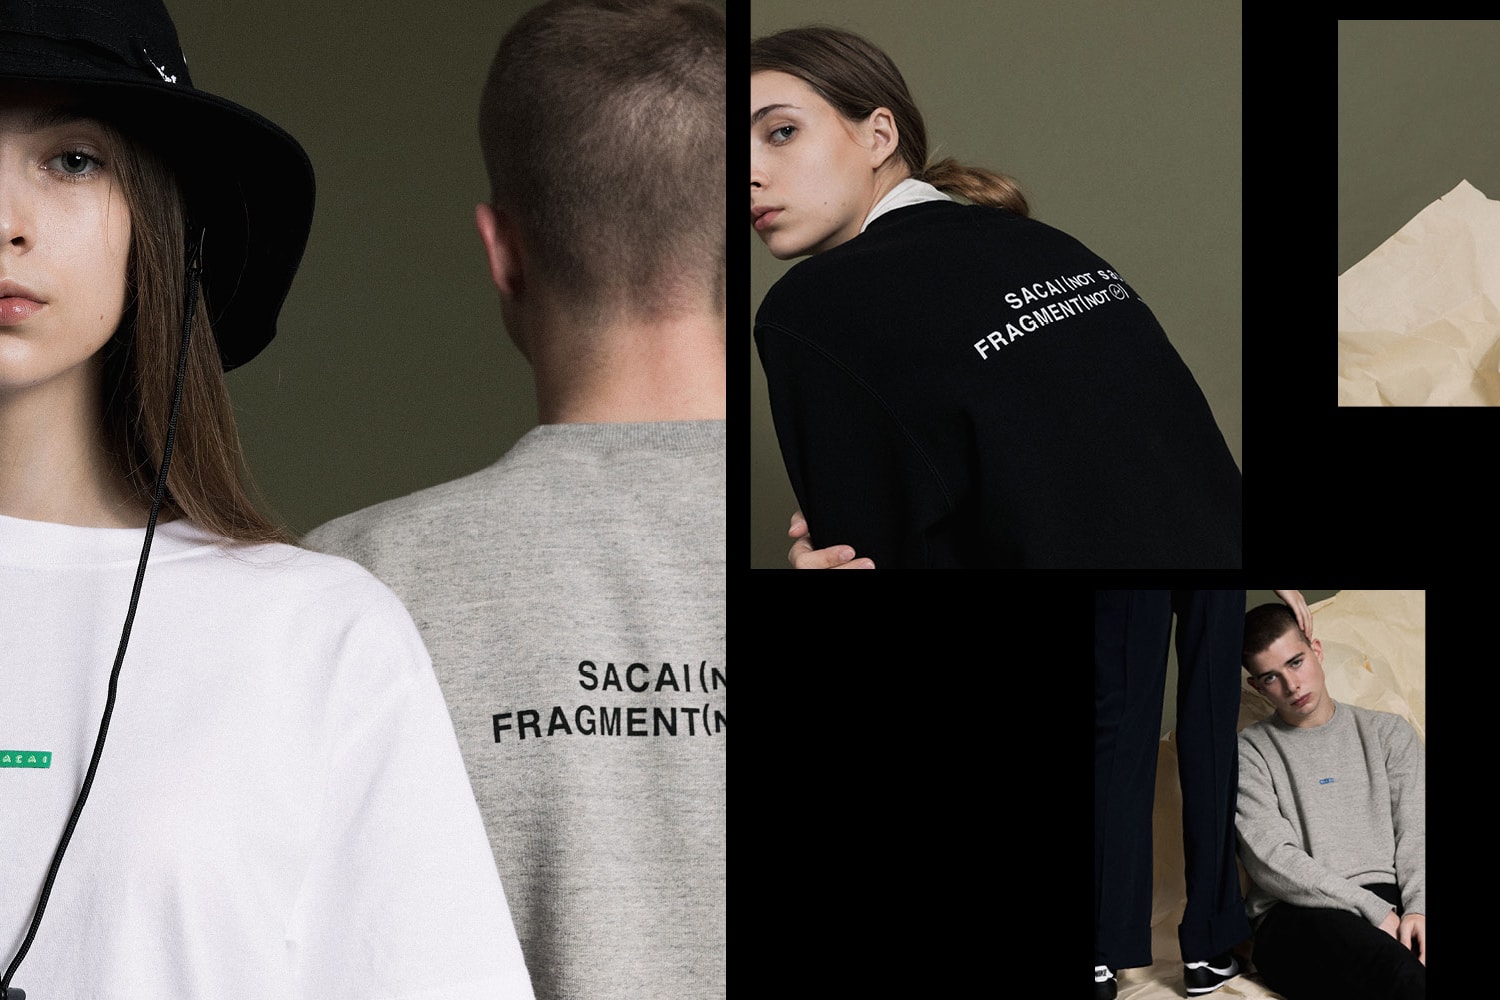 Sacai Fragment Design Exclusive Capsule Coach Jackets Caps Patch Shirts Classic Logo Sweatshirts T-Shirts Jeans Shorts HBX Chitose Abe Hiroshi Fujiwara